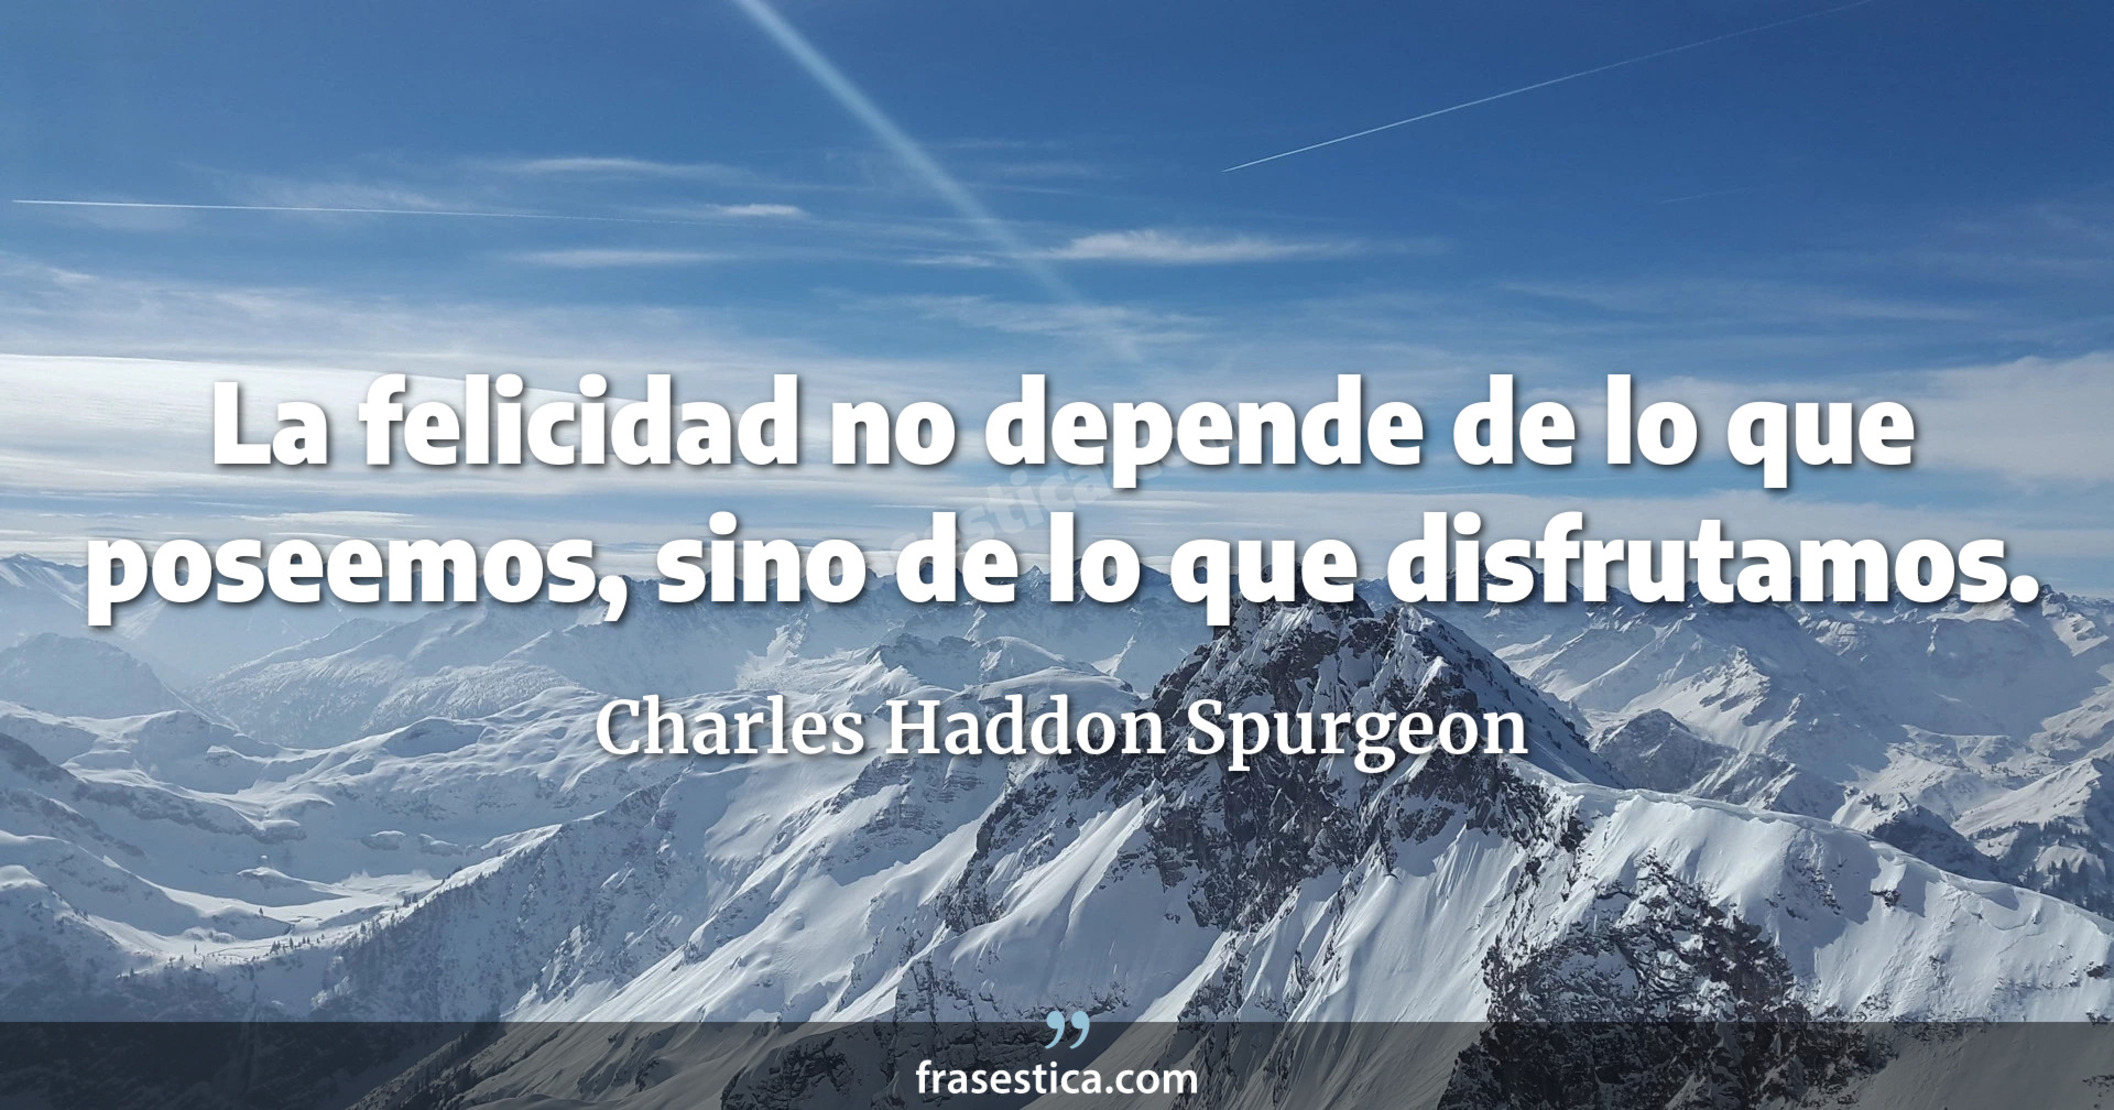 La felicidad no depende de lo que poseemos, sino de lo que disfrutamos. - Charles Haddon Spurgeon